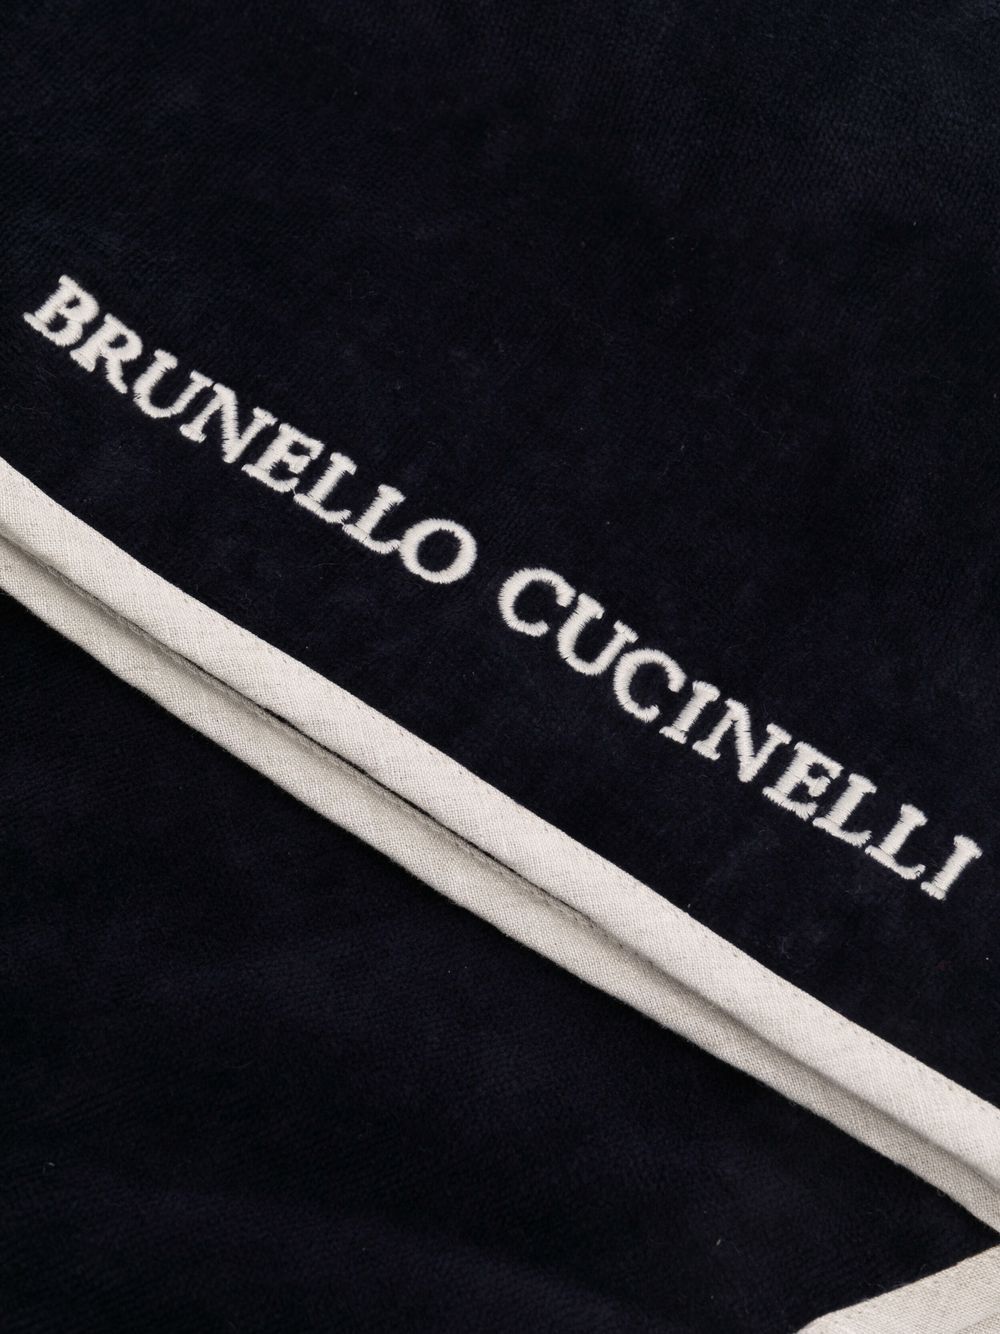 фото Brunello cucinelli полотенце с вышитым логотипом